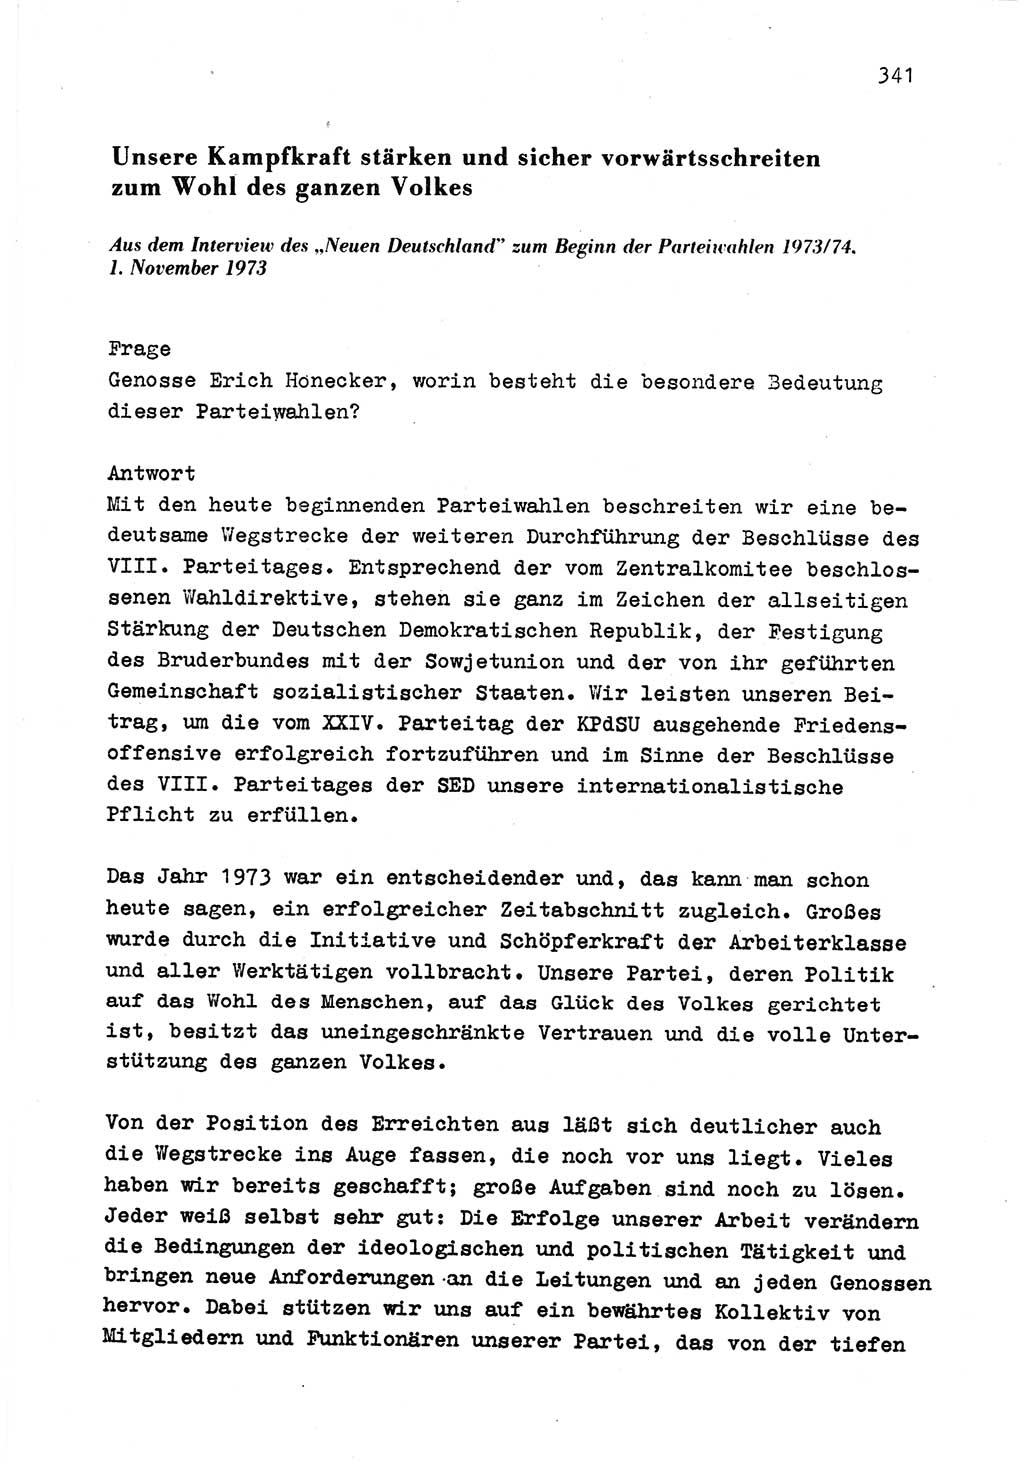 Zu Fragen der Parteiarbeit [Sozialistische Einheitspartei Deutschlands (SED) Deutsche Demokratische Republik (DDR)] 1979, Seite 341 (Fr. PA SED DDR 1979, S. 341)